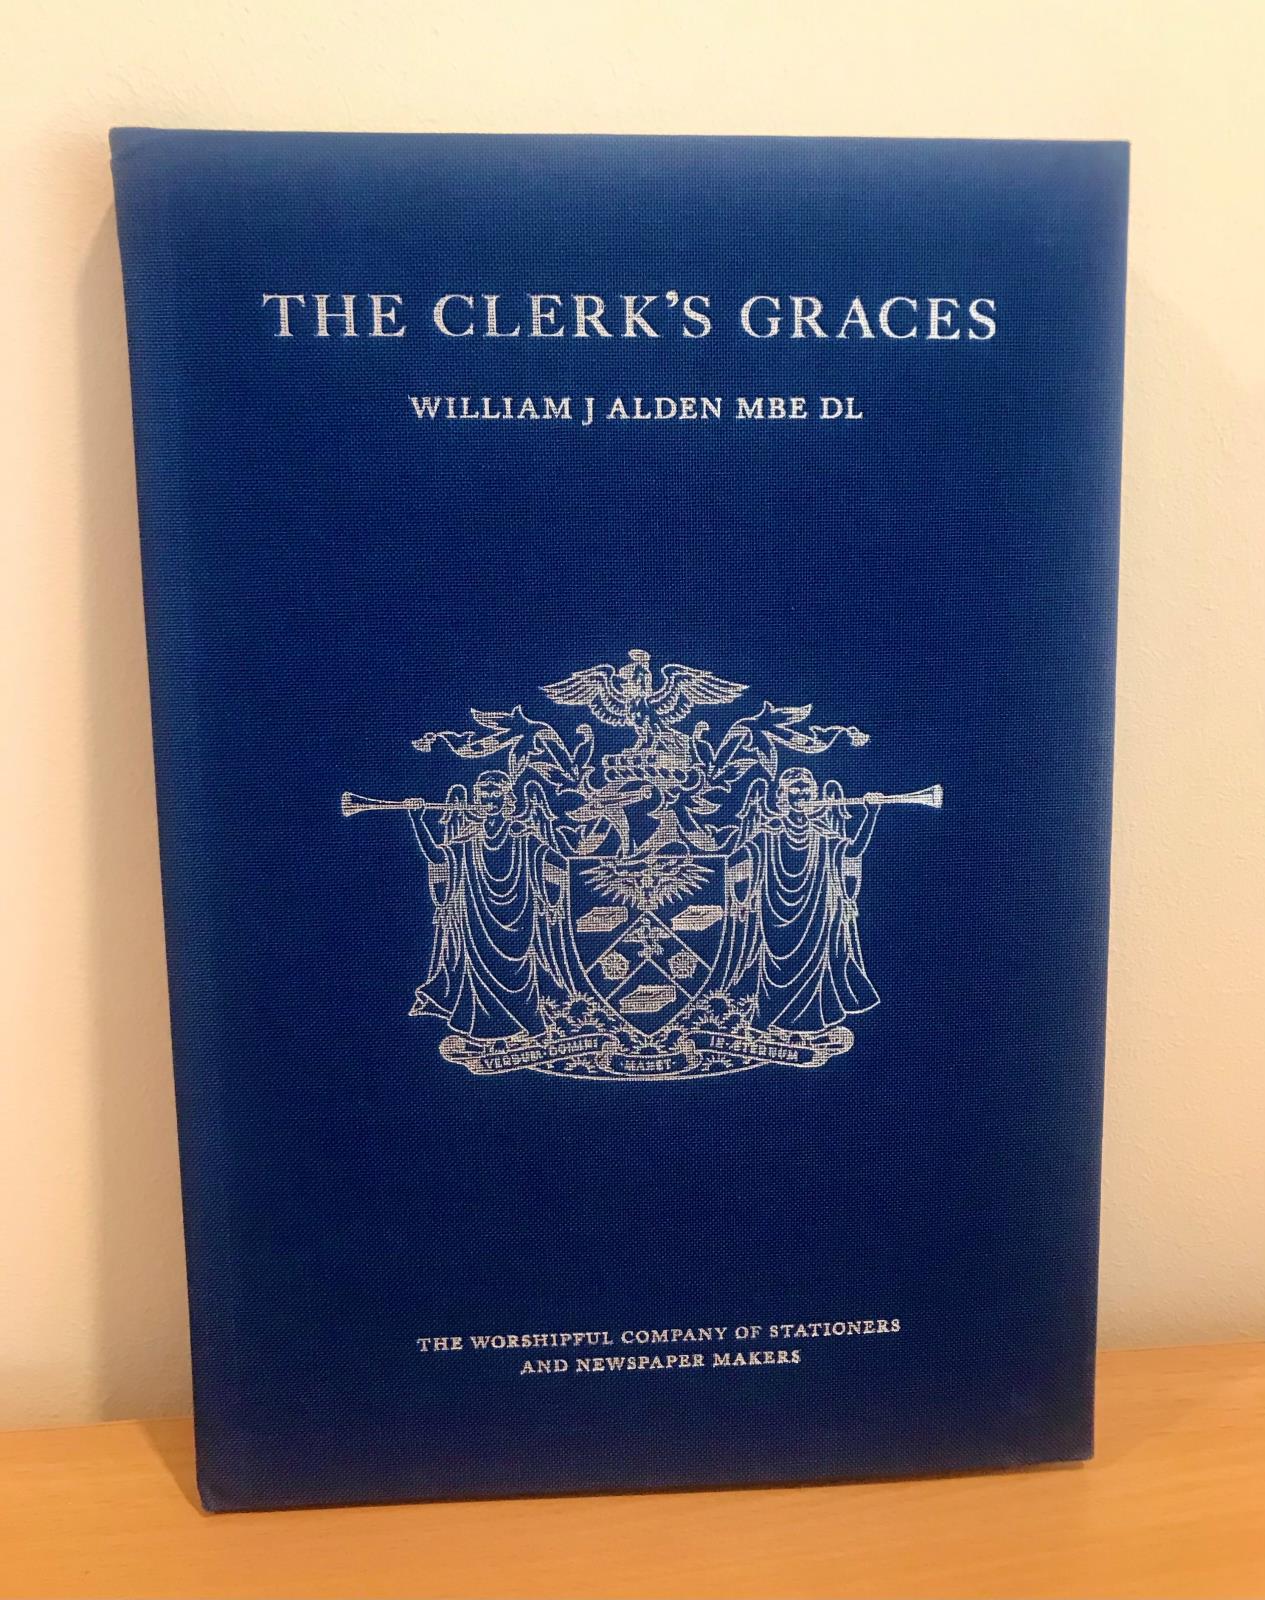 The Clerk's Graces - William J Alden MBE DL